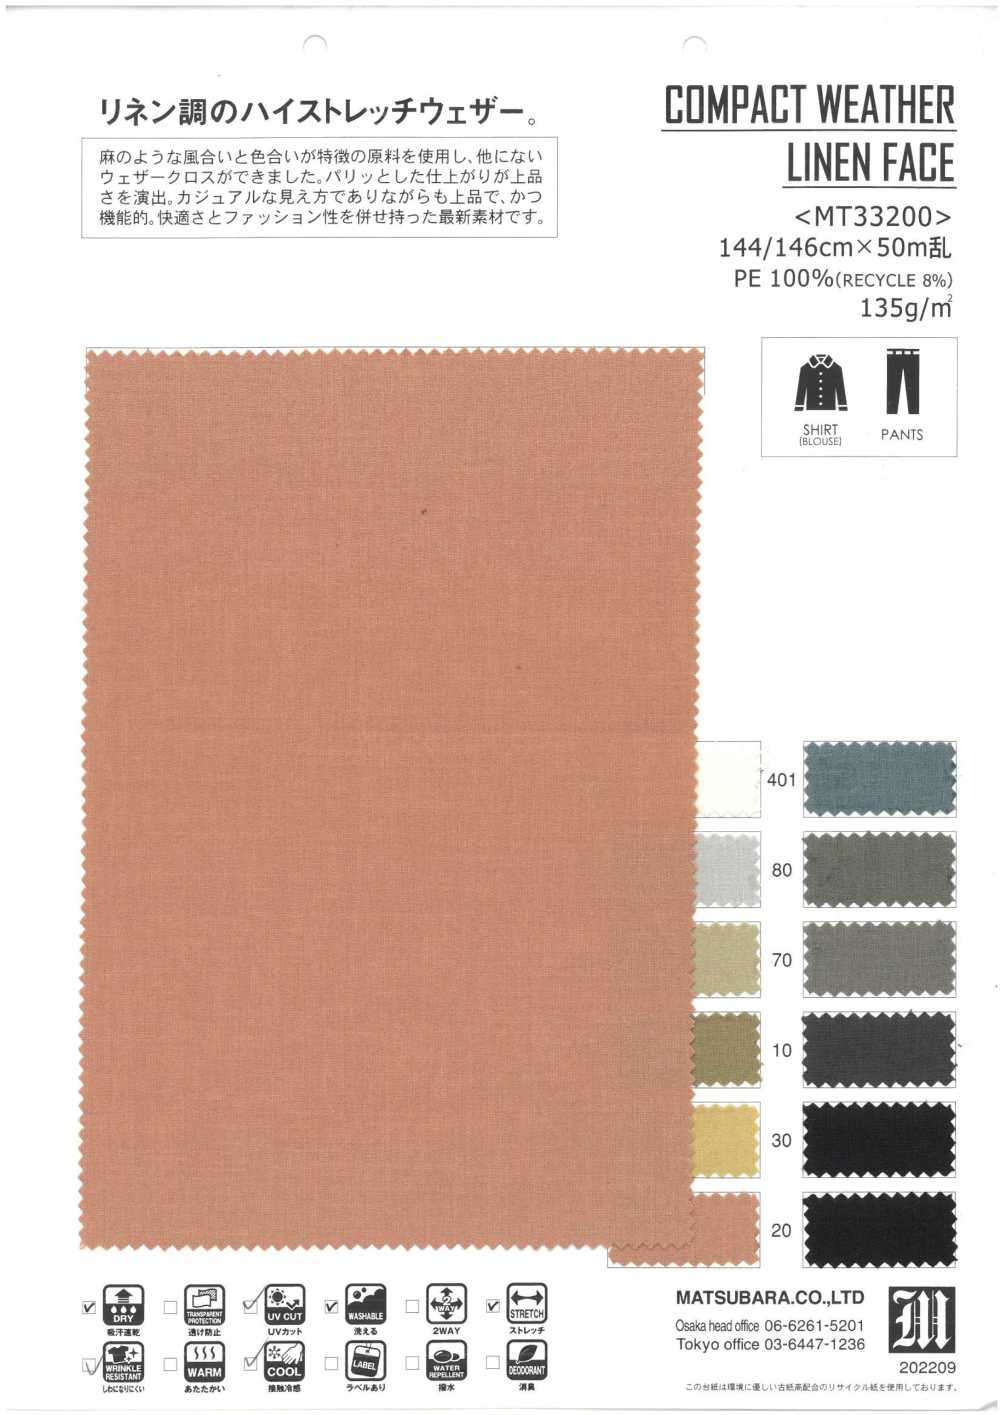 MT33200 CARA COMPACTA DE LINO PARA EL TIEMPO[Fabrica Textil] Matsubara